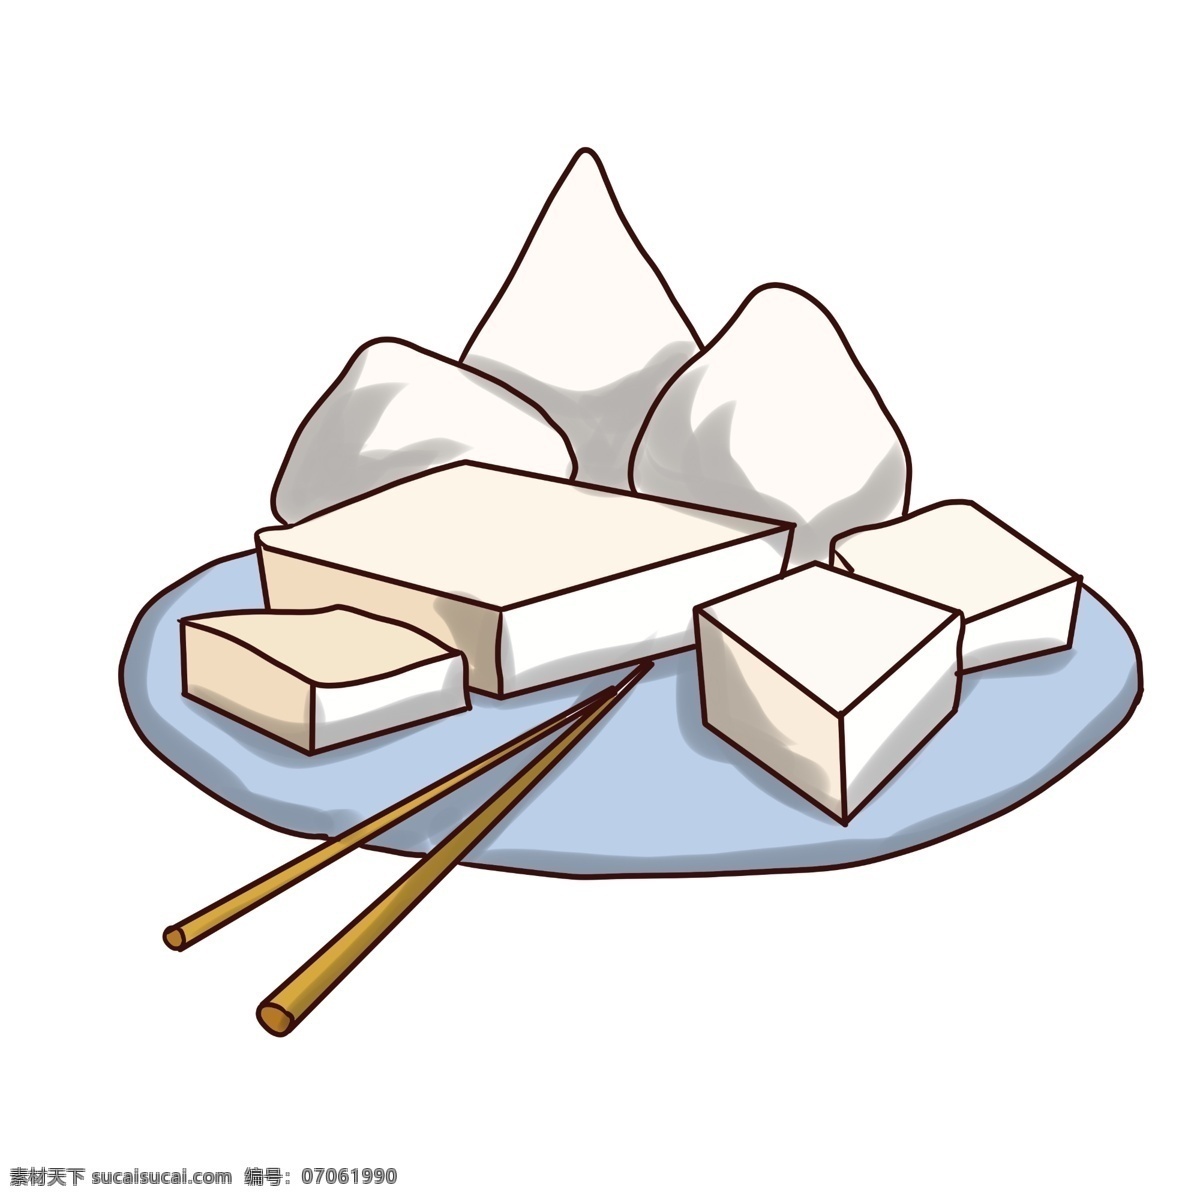 中式 面点 小吃 插画 白色的馒头 白色的豆腐 一双筷子 一盘小吃 创意美食插画 白色乳酪 中式餐点